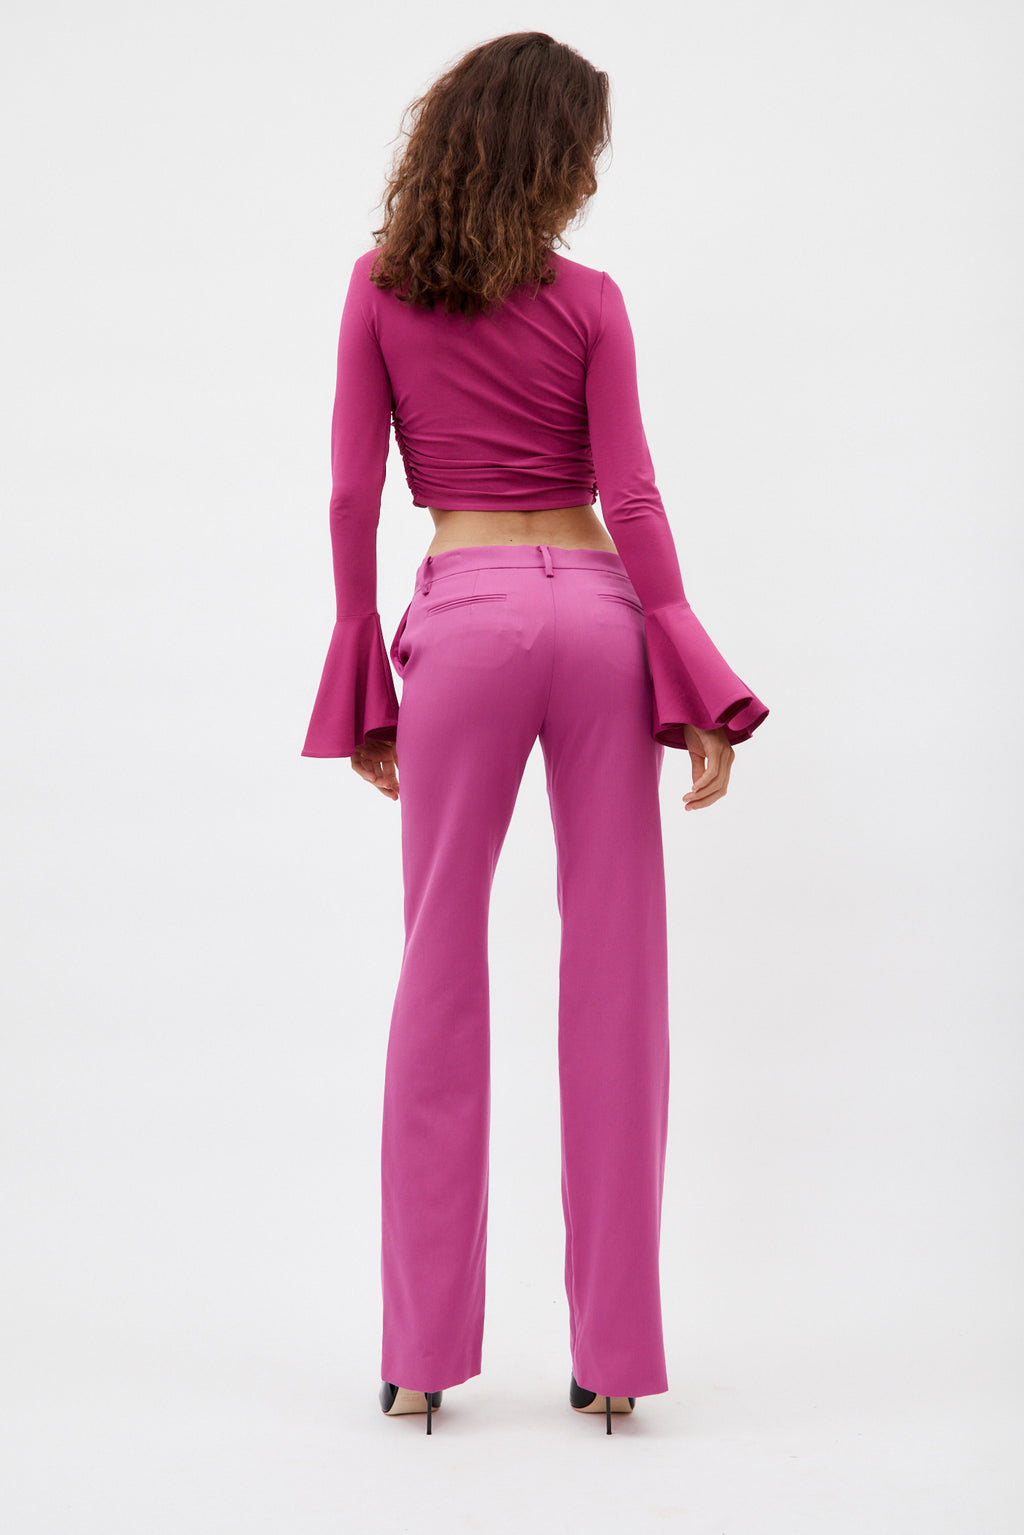 70's Bell Sleeve Violet Jersey Crop Top